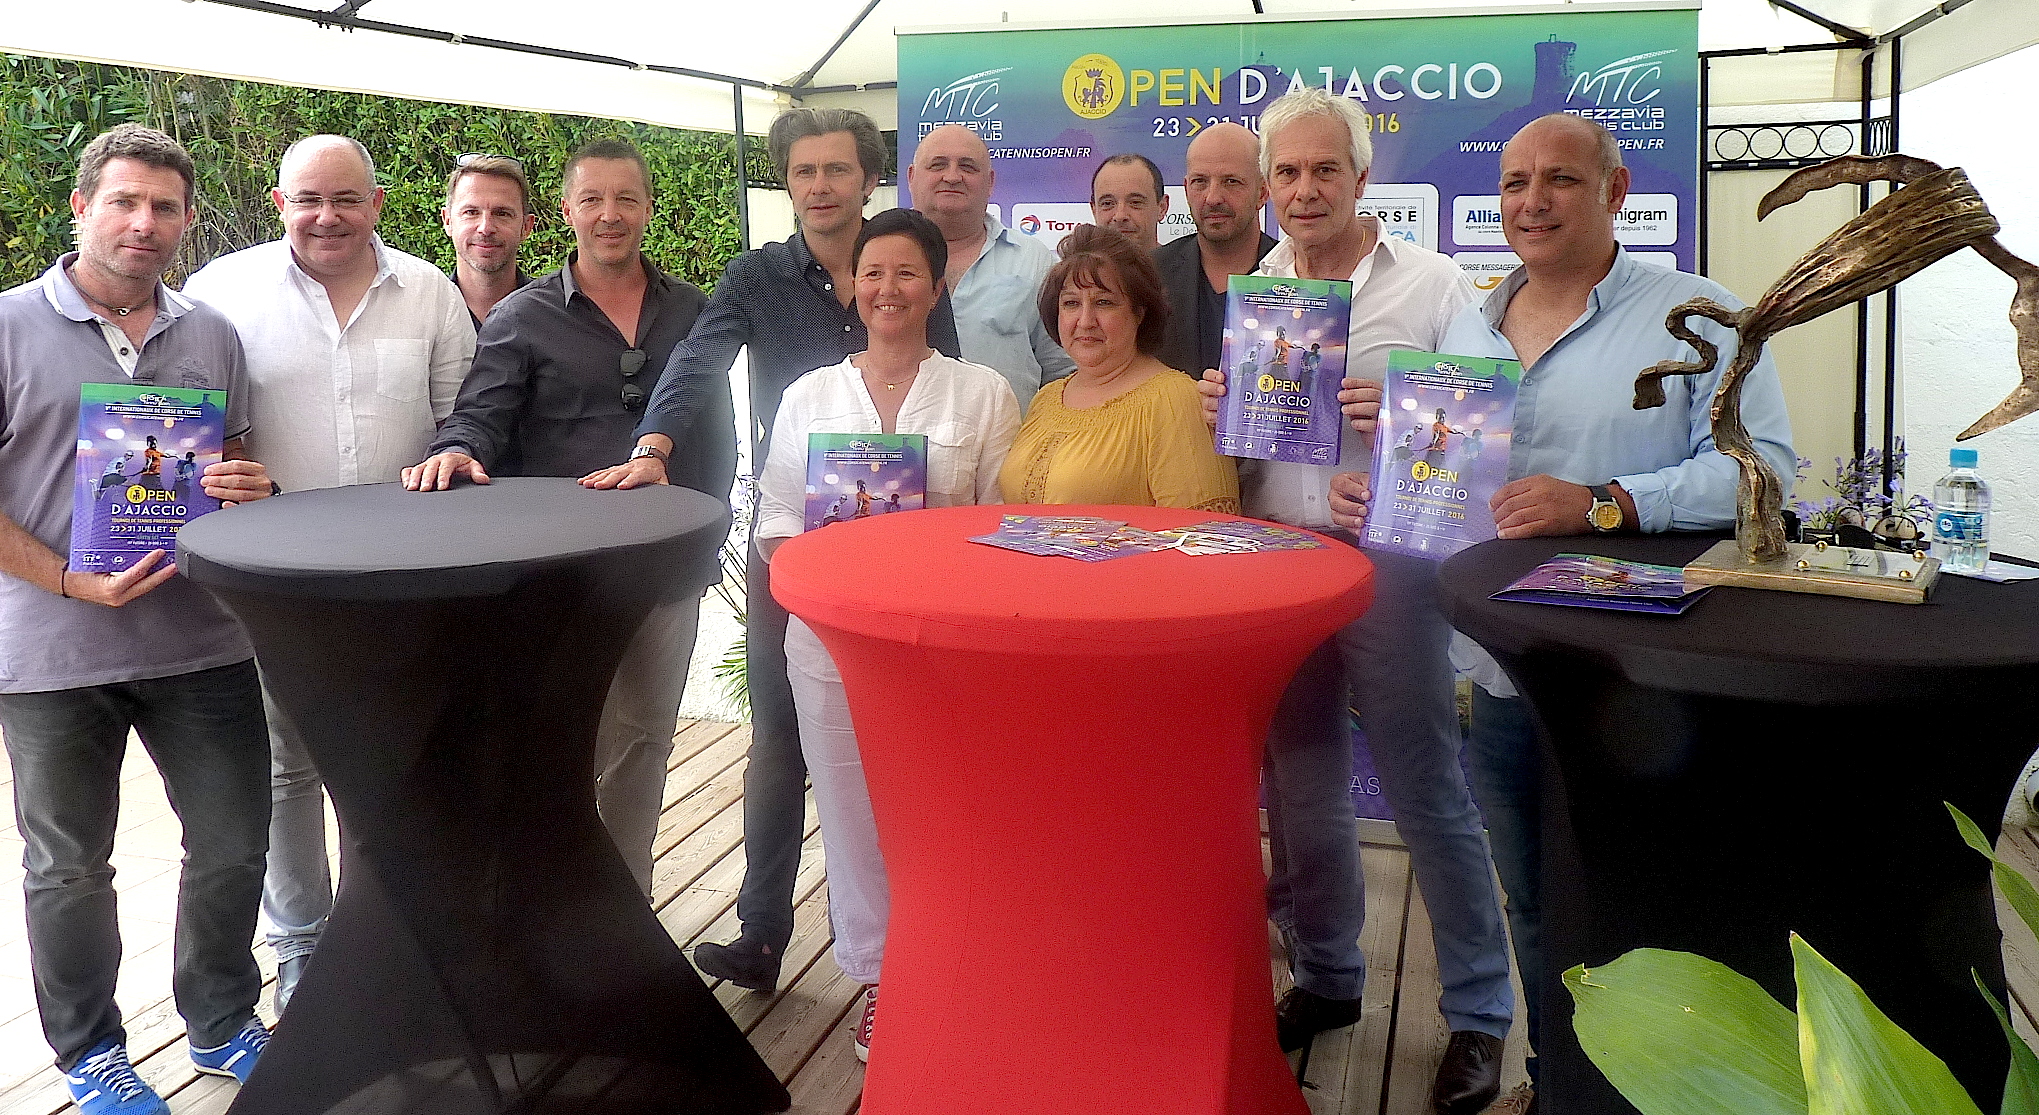  Les 5e Internationaux de Tennis (Open d'Ajaccio) du 23 au 31 juillet au Mezzavia TC